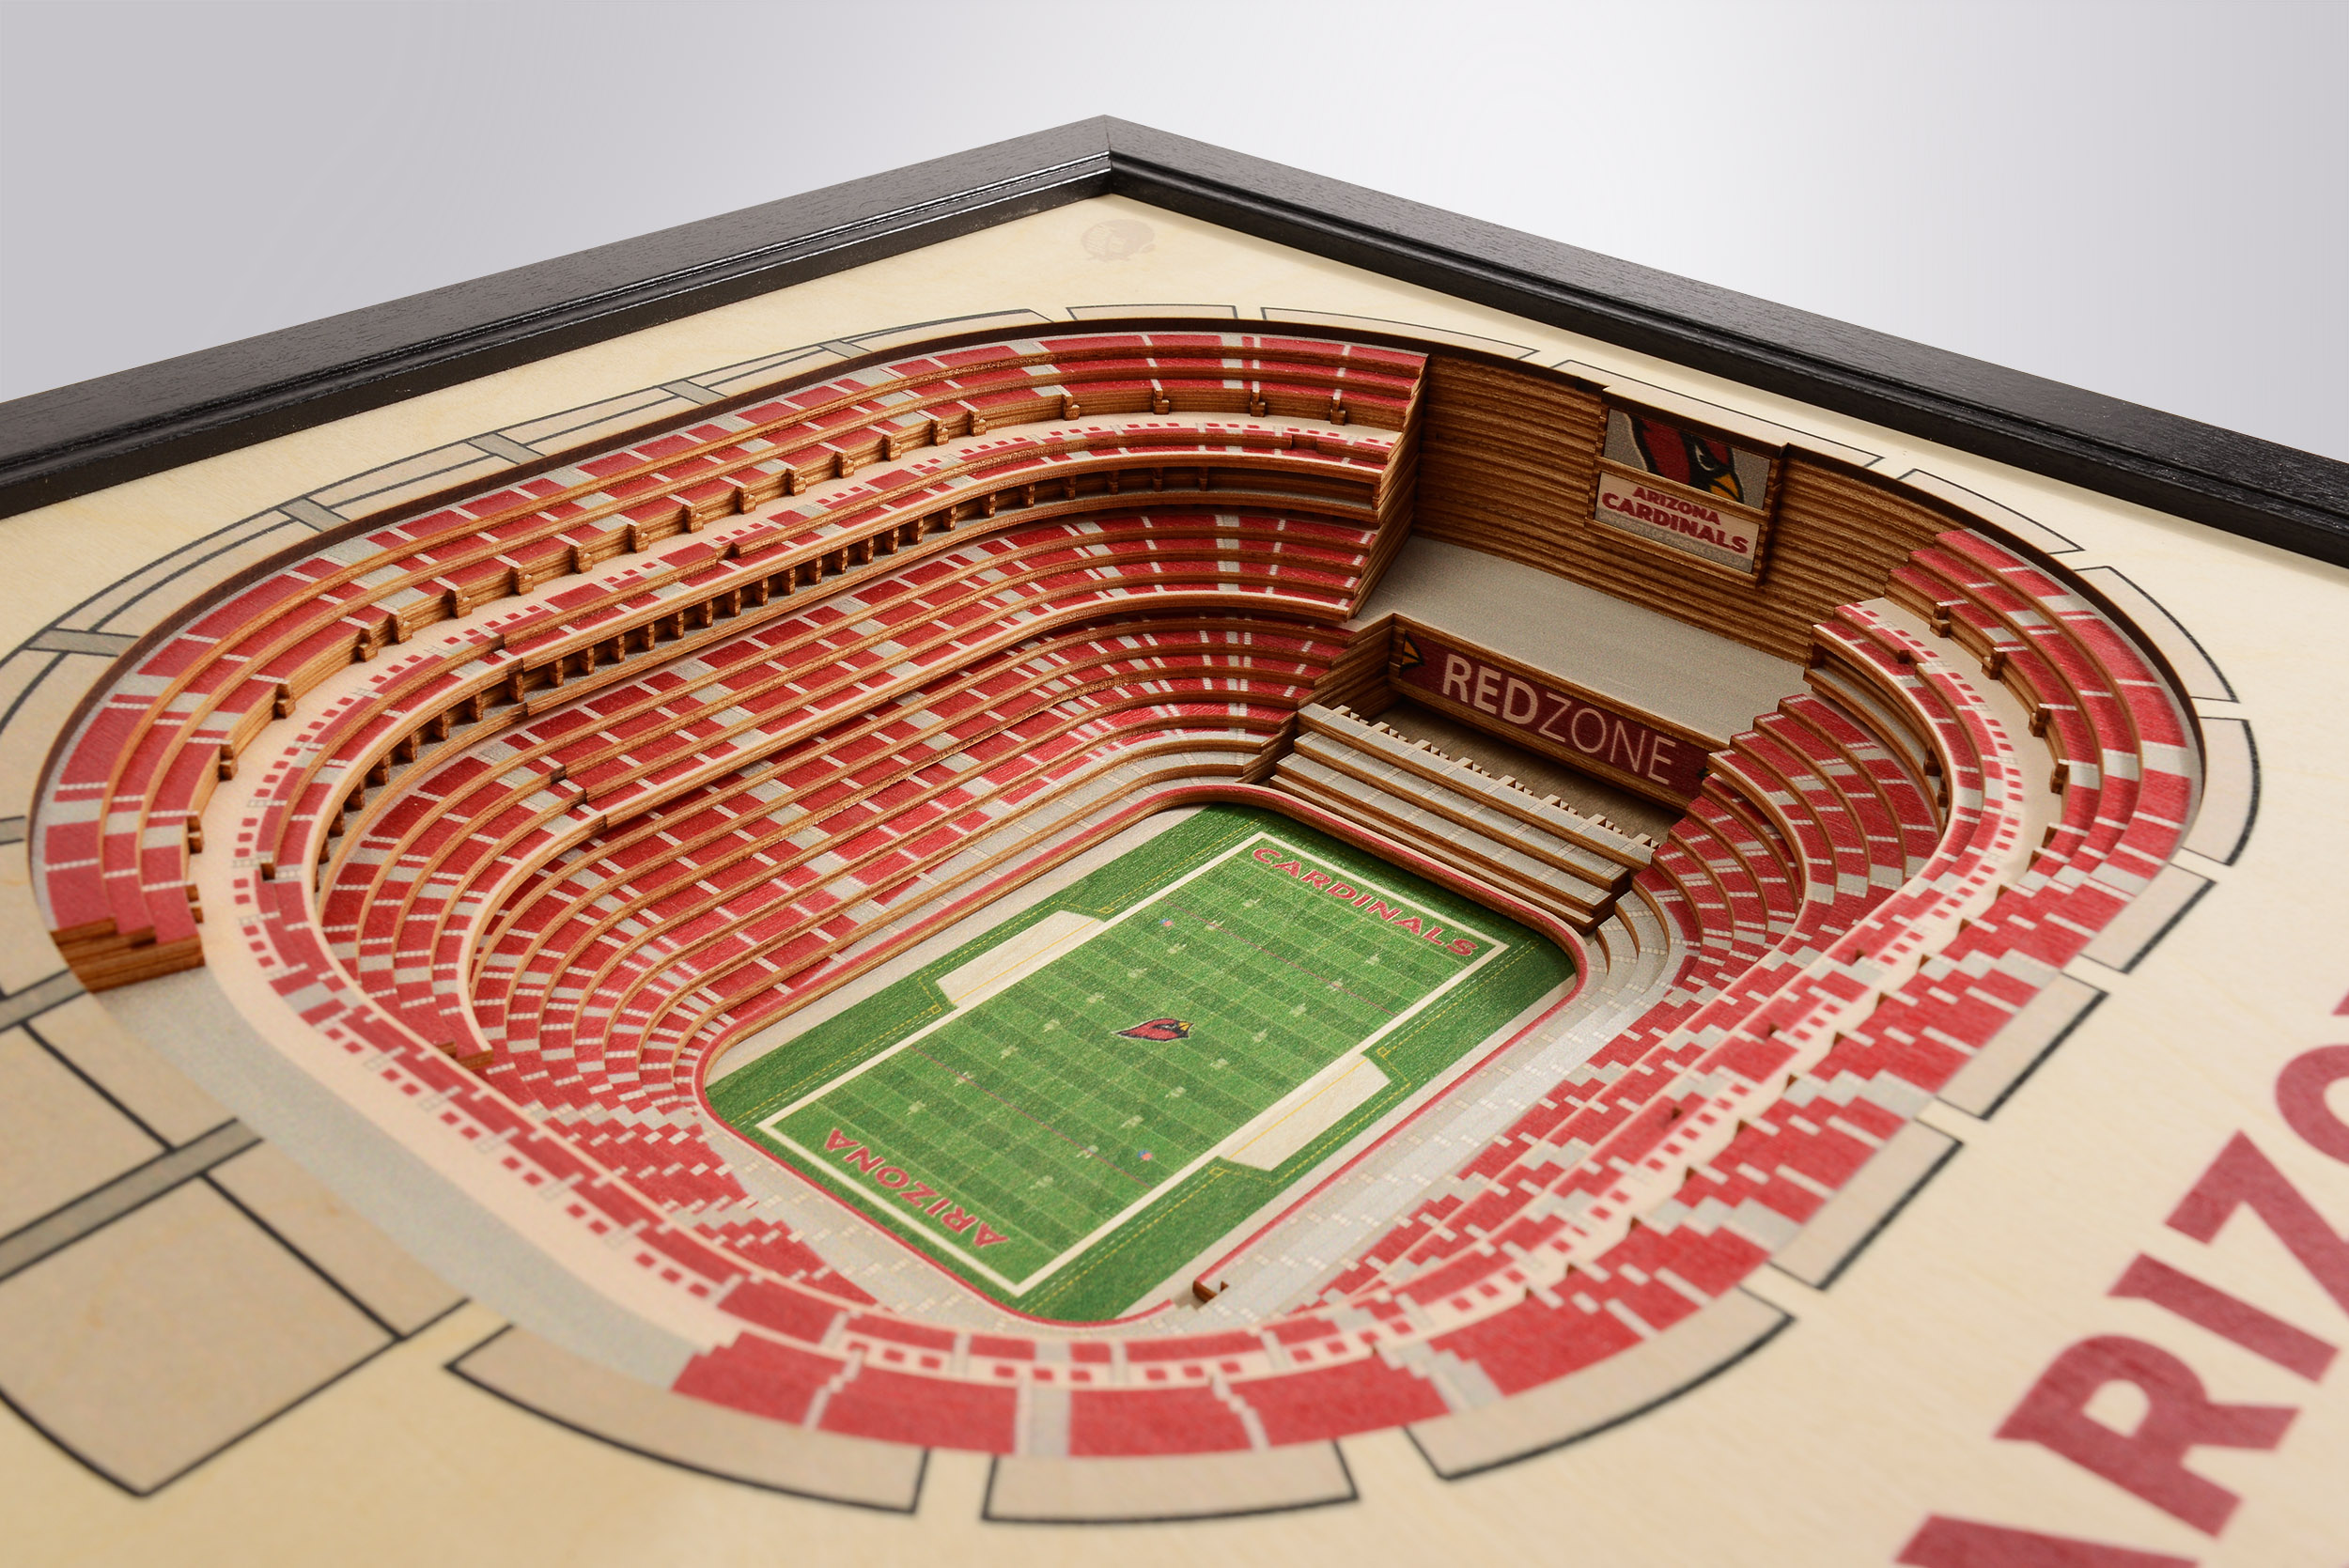 Az Cardinals Stadium Seating Chart 3d